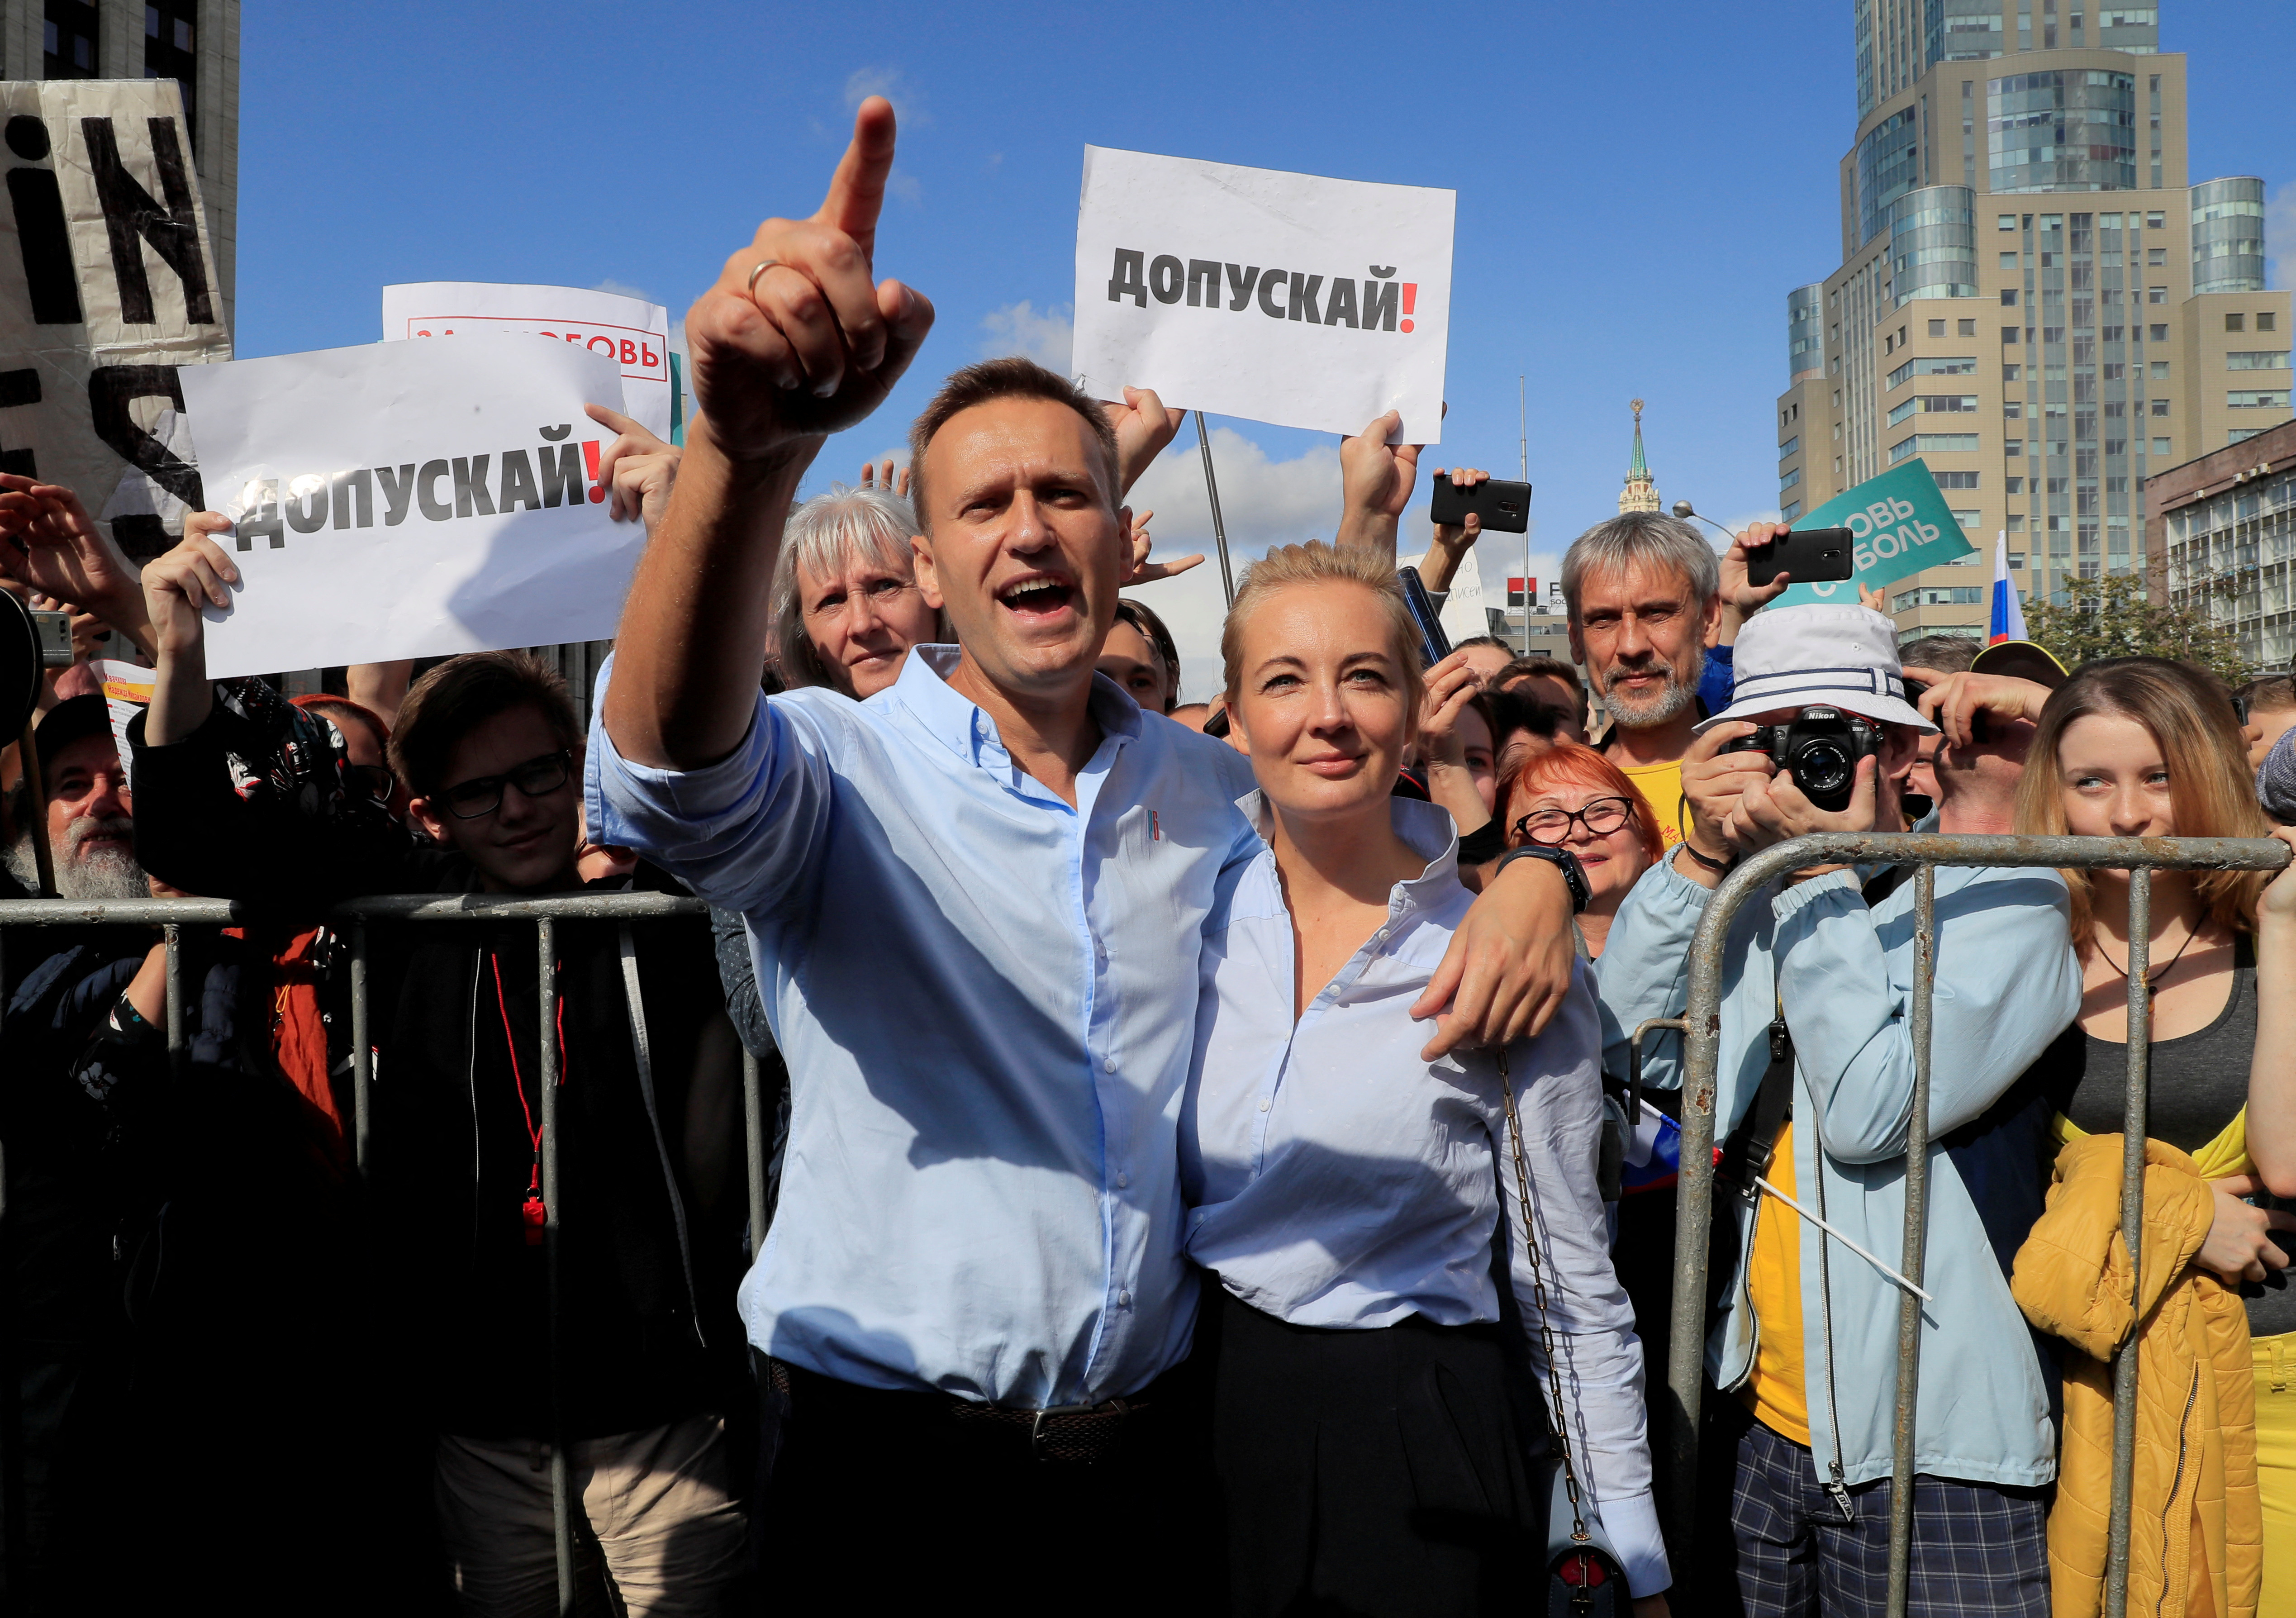 Лондон навальный. Навальный 2019. Митинги в России 2019 год. Допускай митинг.